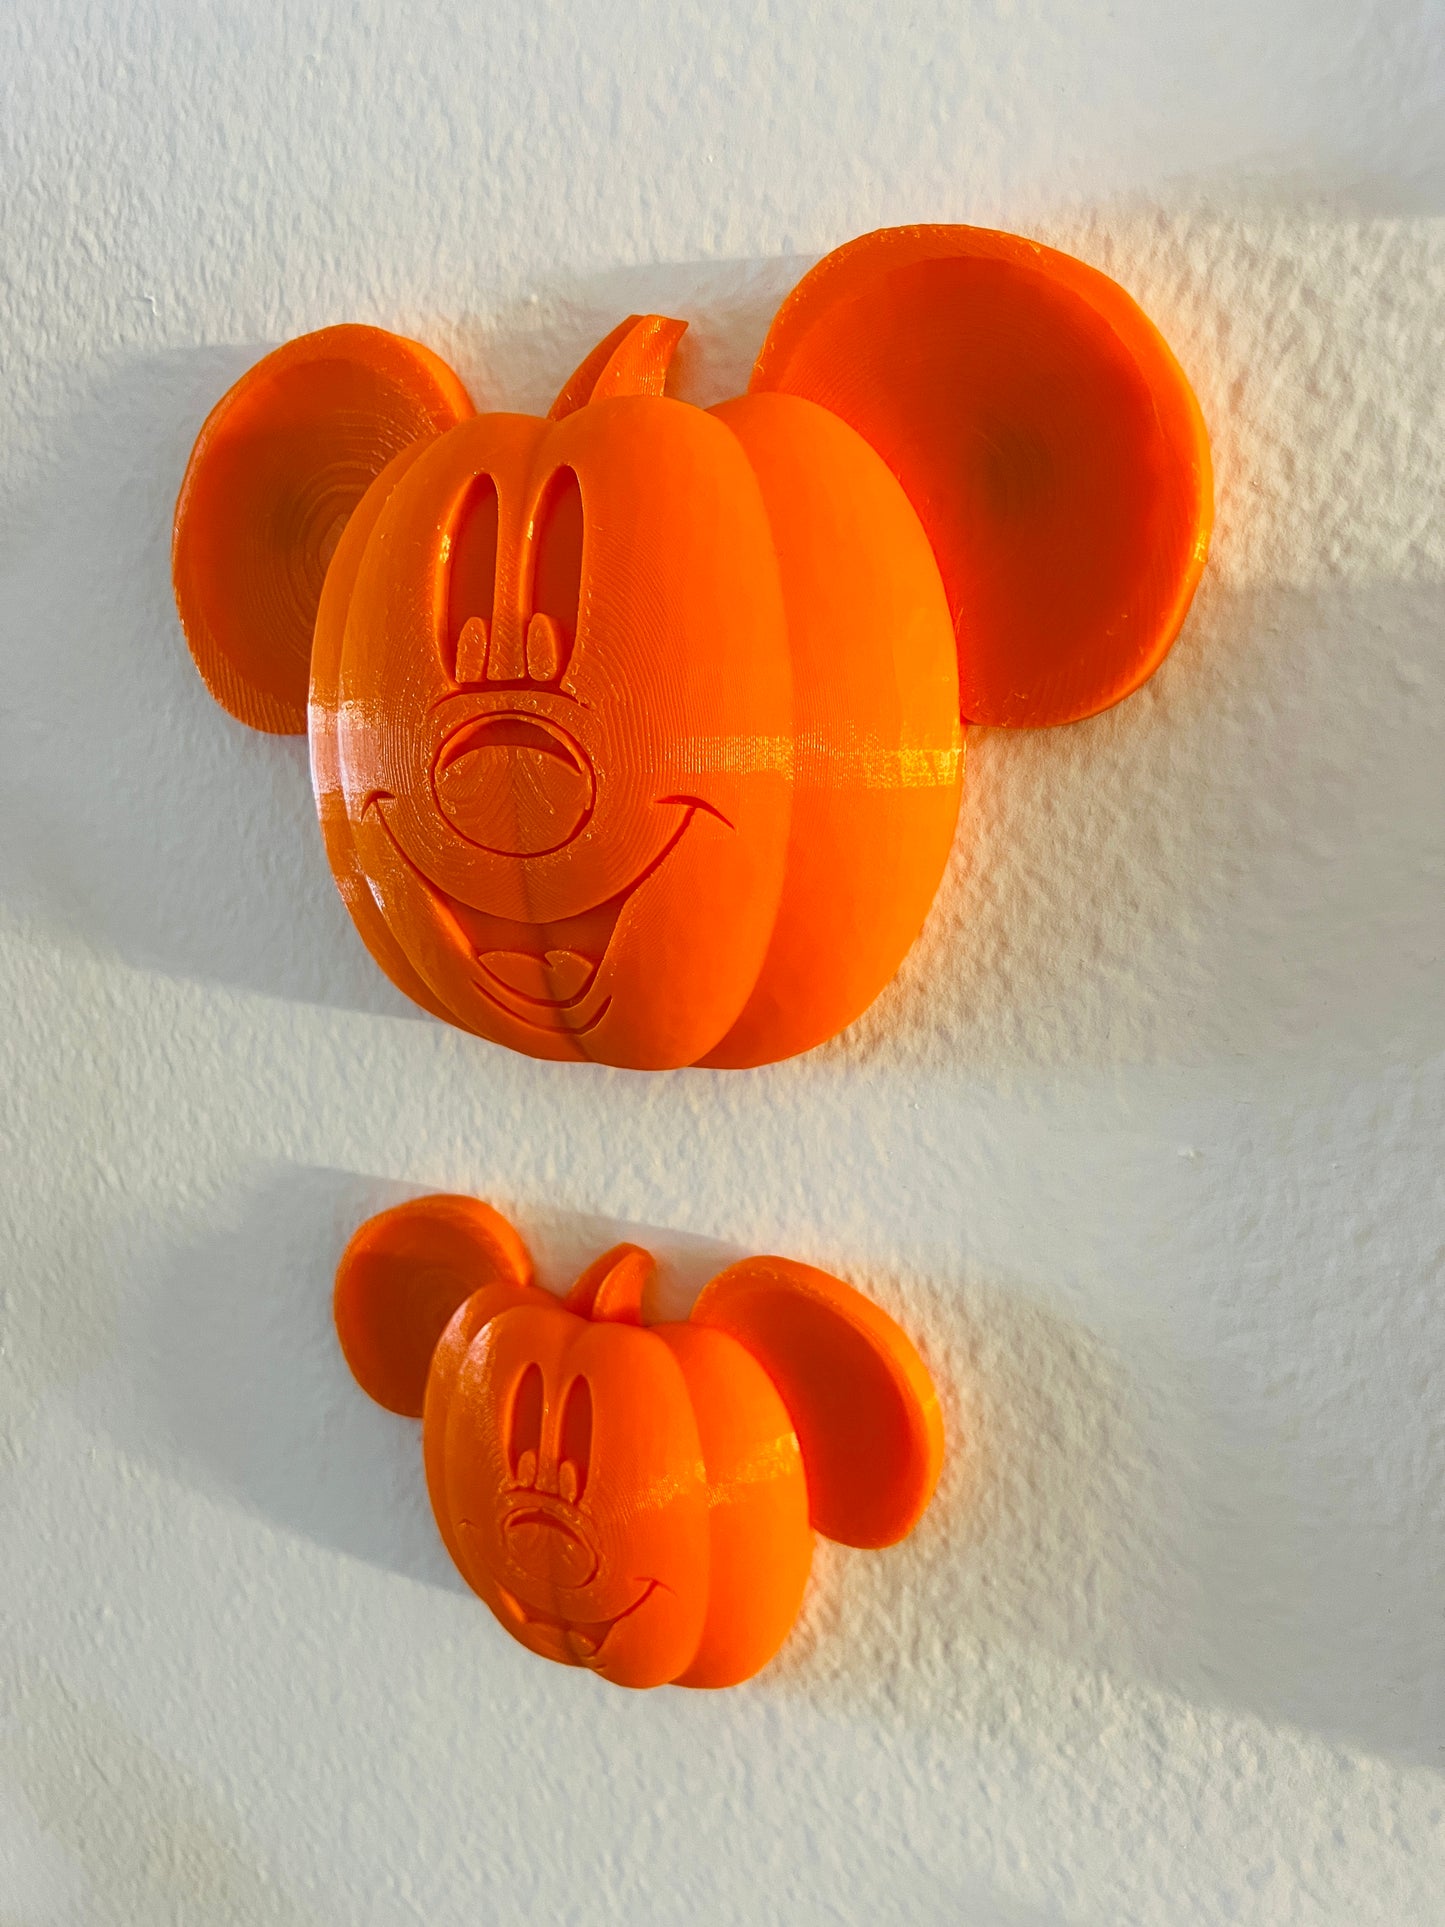 
                  
                    Mouse Pumpkin Decorations
                  
                